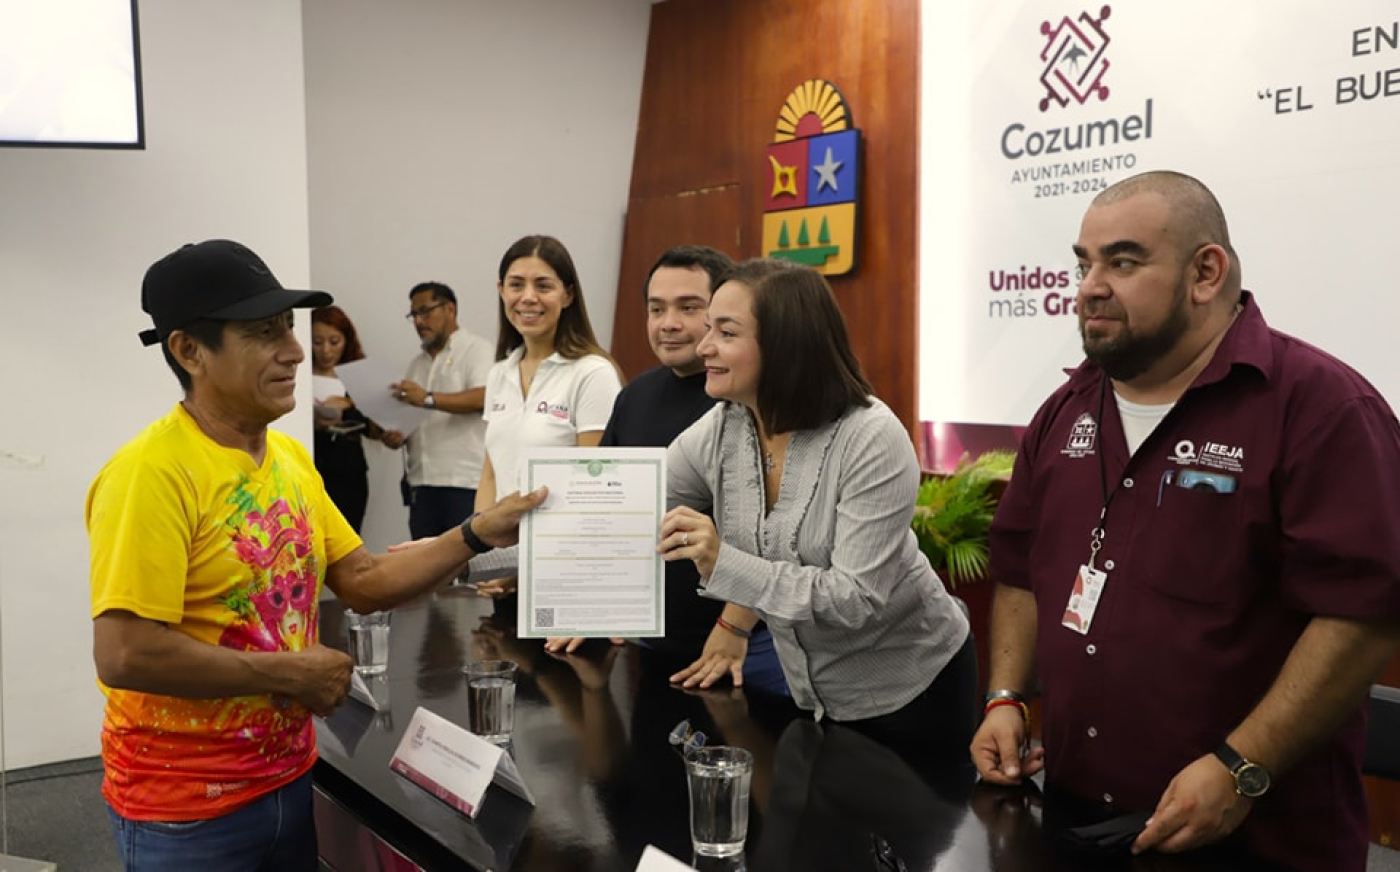 Profesionalizan a funcionarios de Cozumel con programa “El buen juez por su casa empieza”